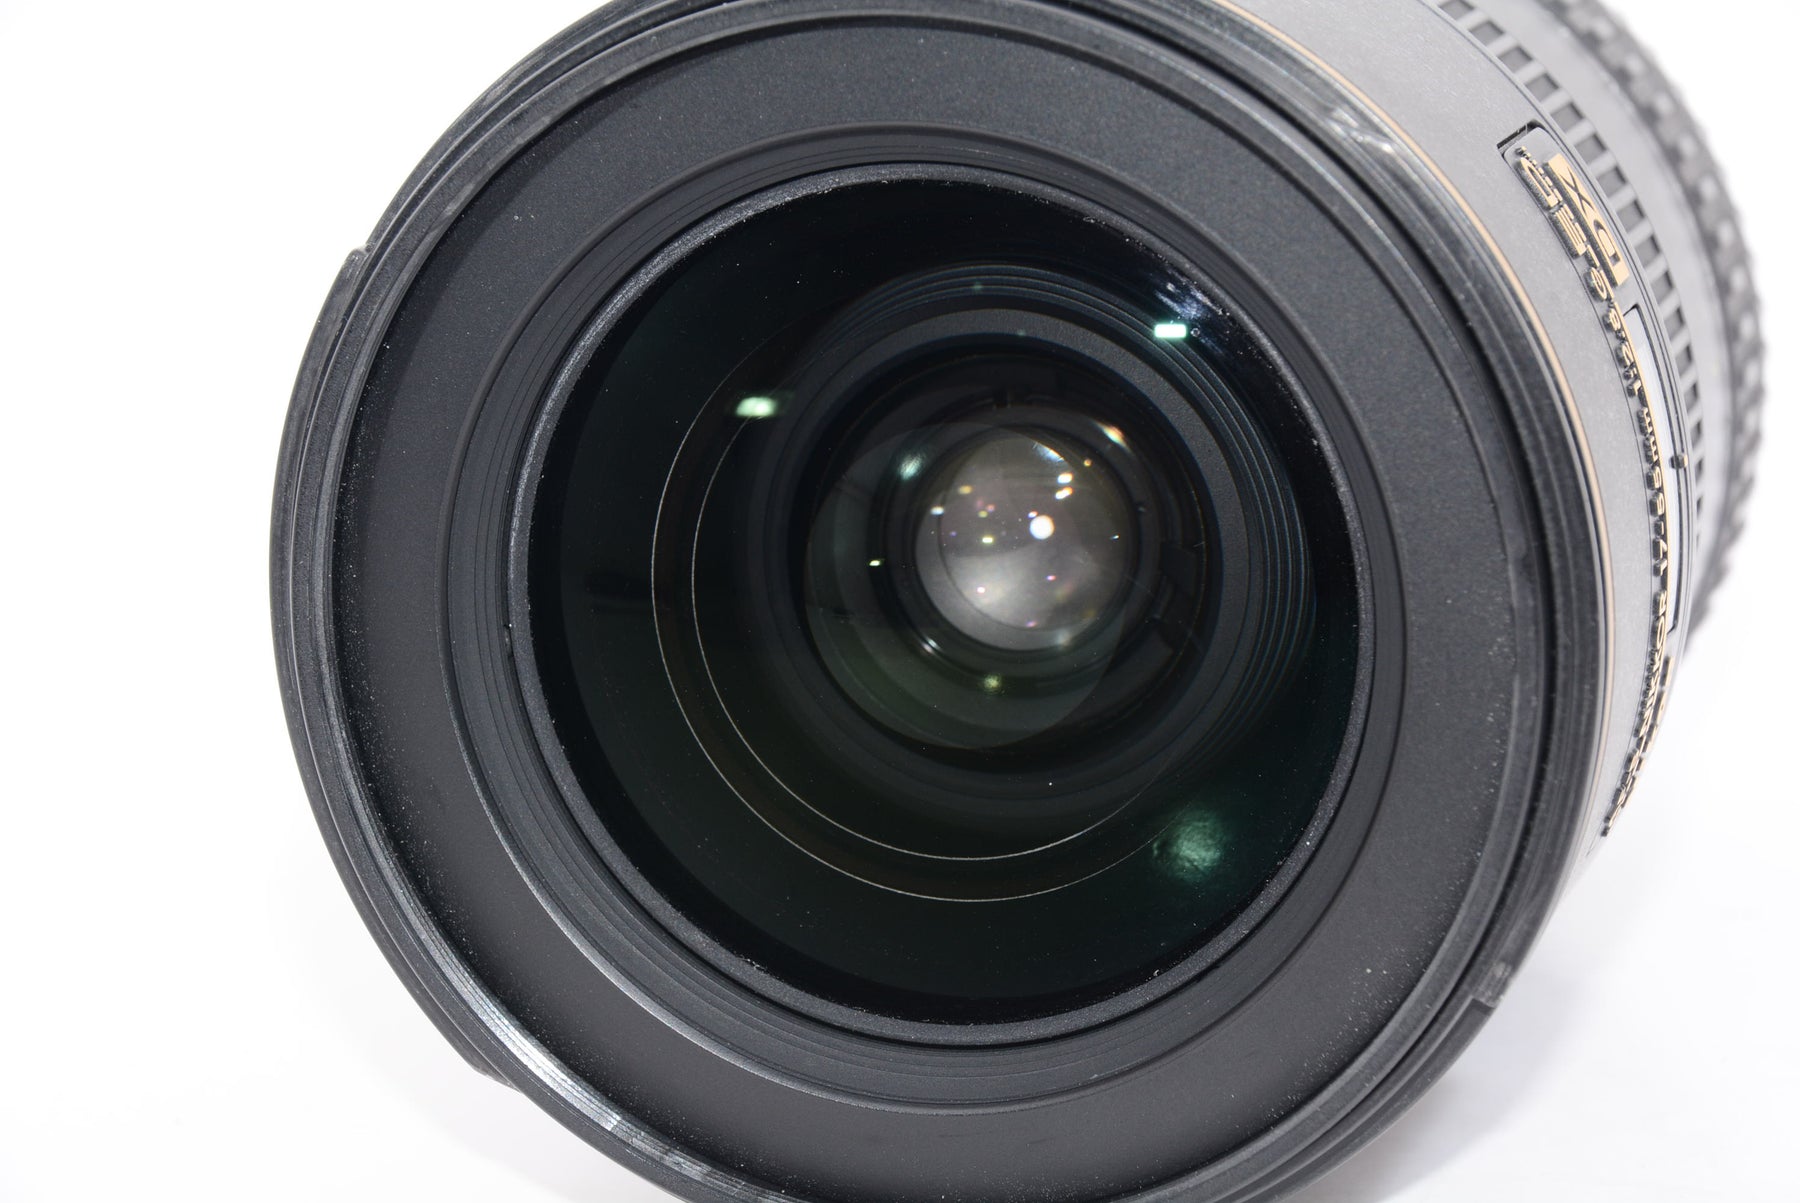 【オススメ】Nikon  AF-S DX Zoom Nikkor 17-55mm f/2.8G IF-ED